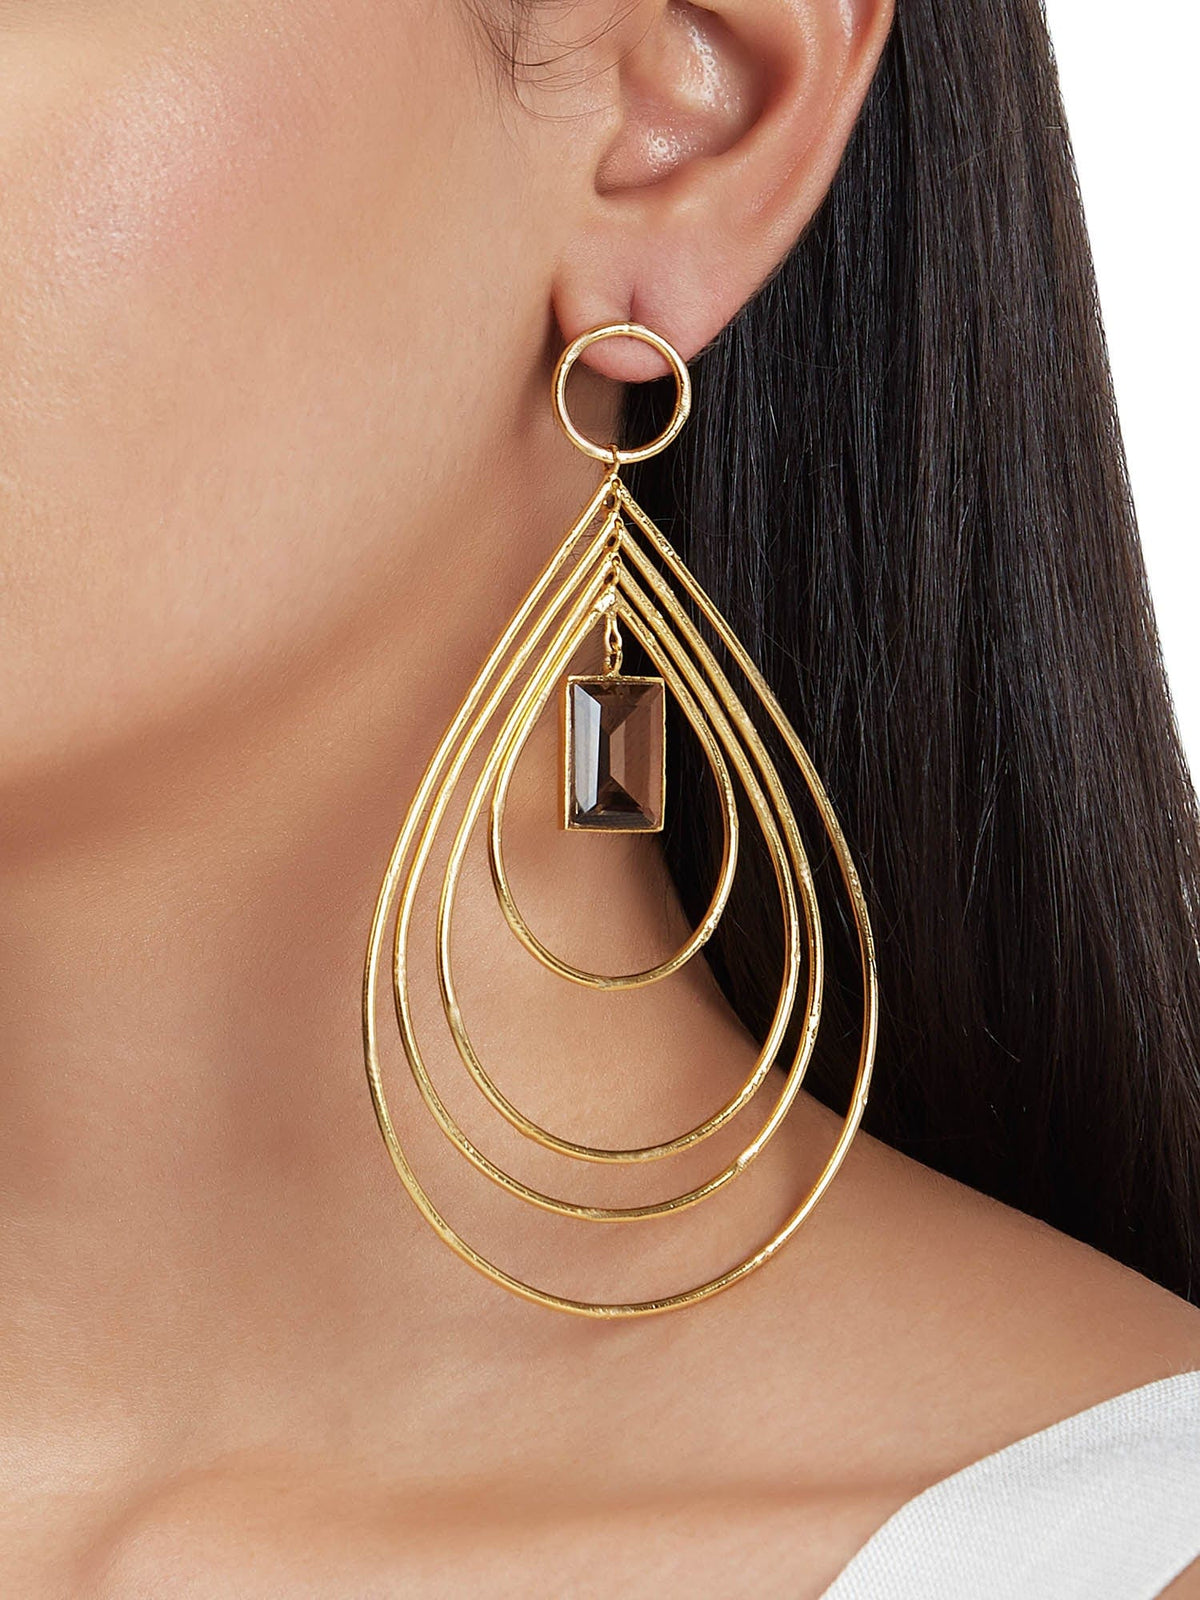 Neryssa earrings